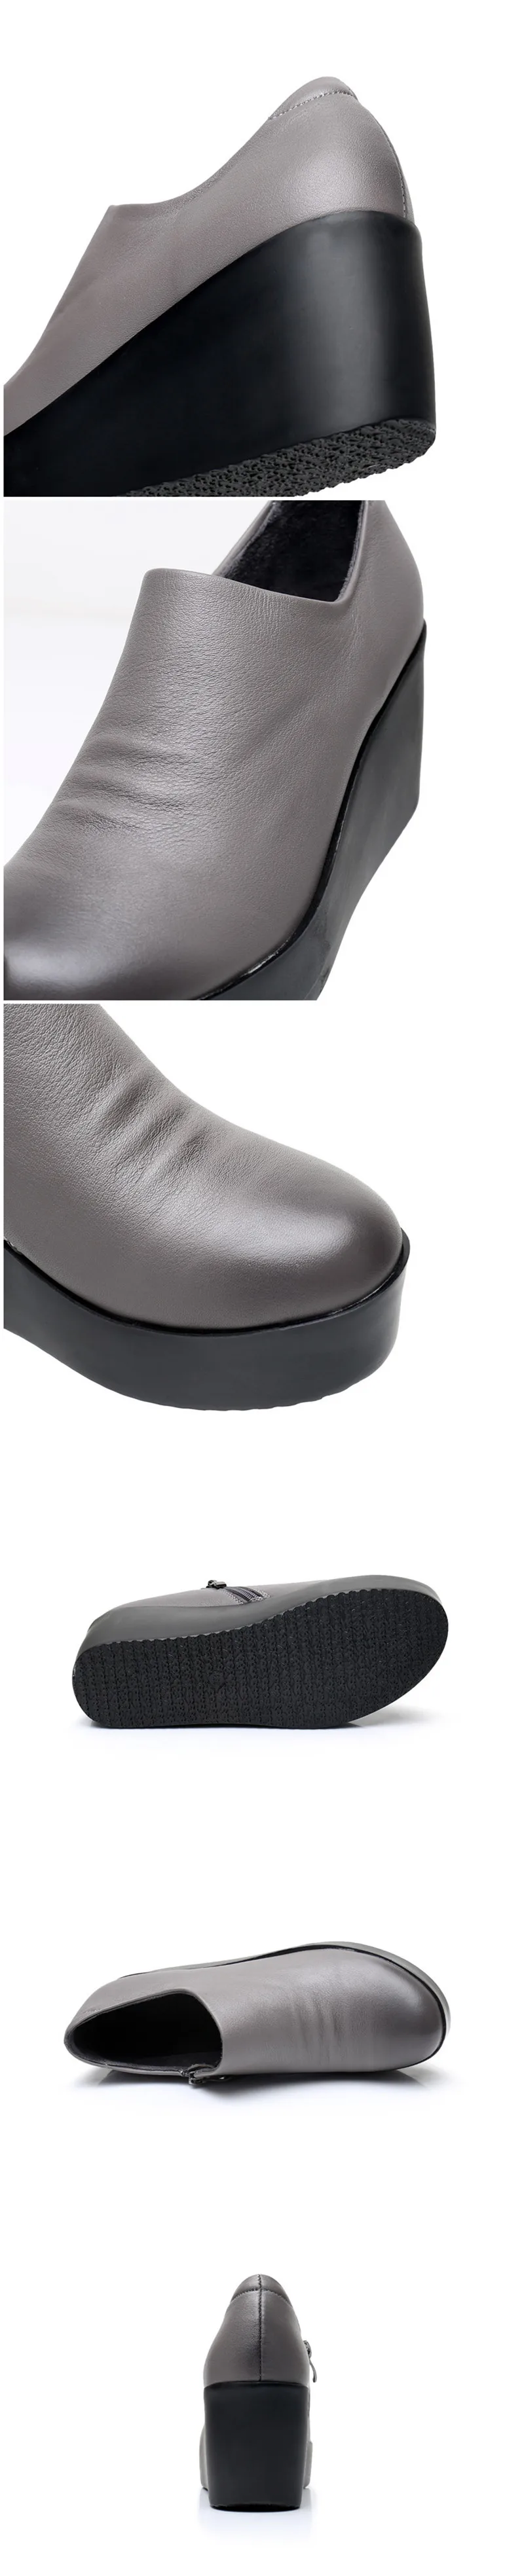 BEYARNE/ г. Клинья женские туфли для девочек весна-осень, без шнуровки, высокий каблук, круглый носок, натуральная кожа, повседневная женская обувь на платформе WomanE296